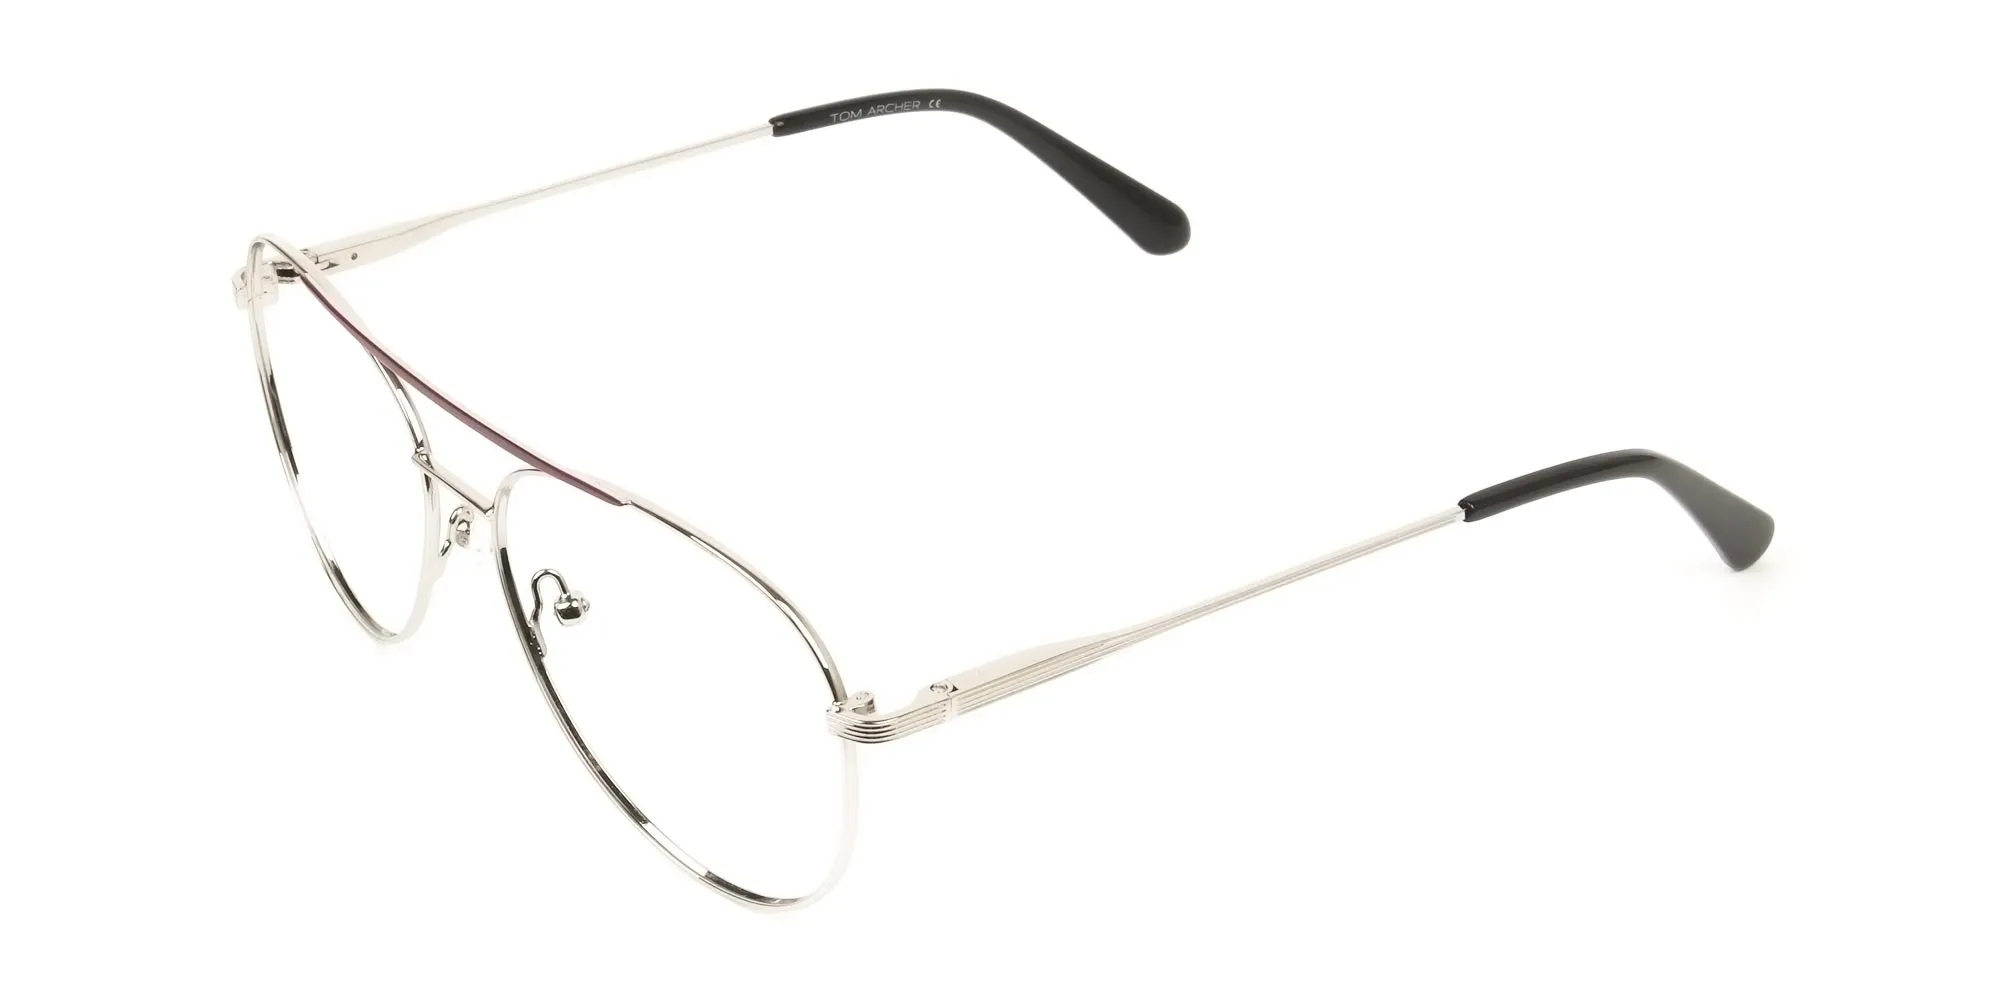 Silver and Brown Flat Bridge Pilot Glasses - 2